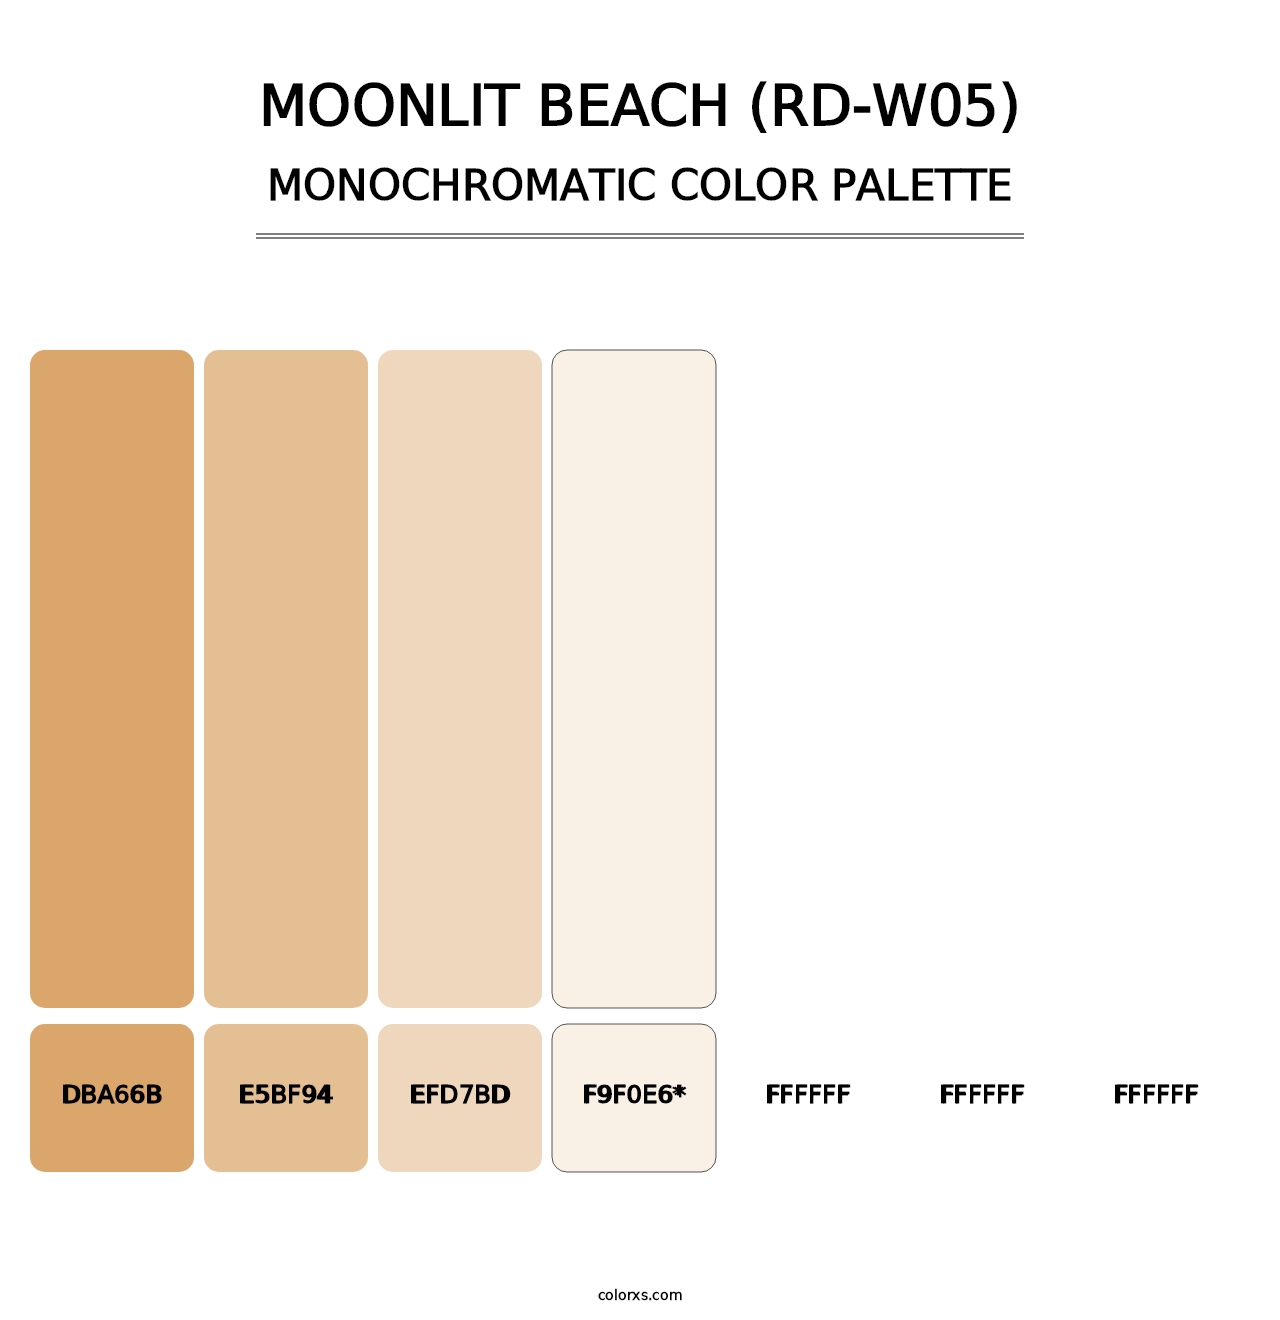 Moonlit Beach (RD-W05) - Monochromatic Color Palette